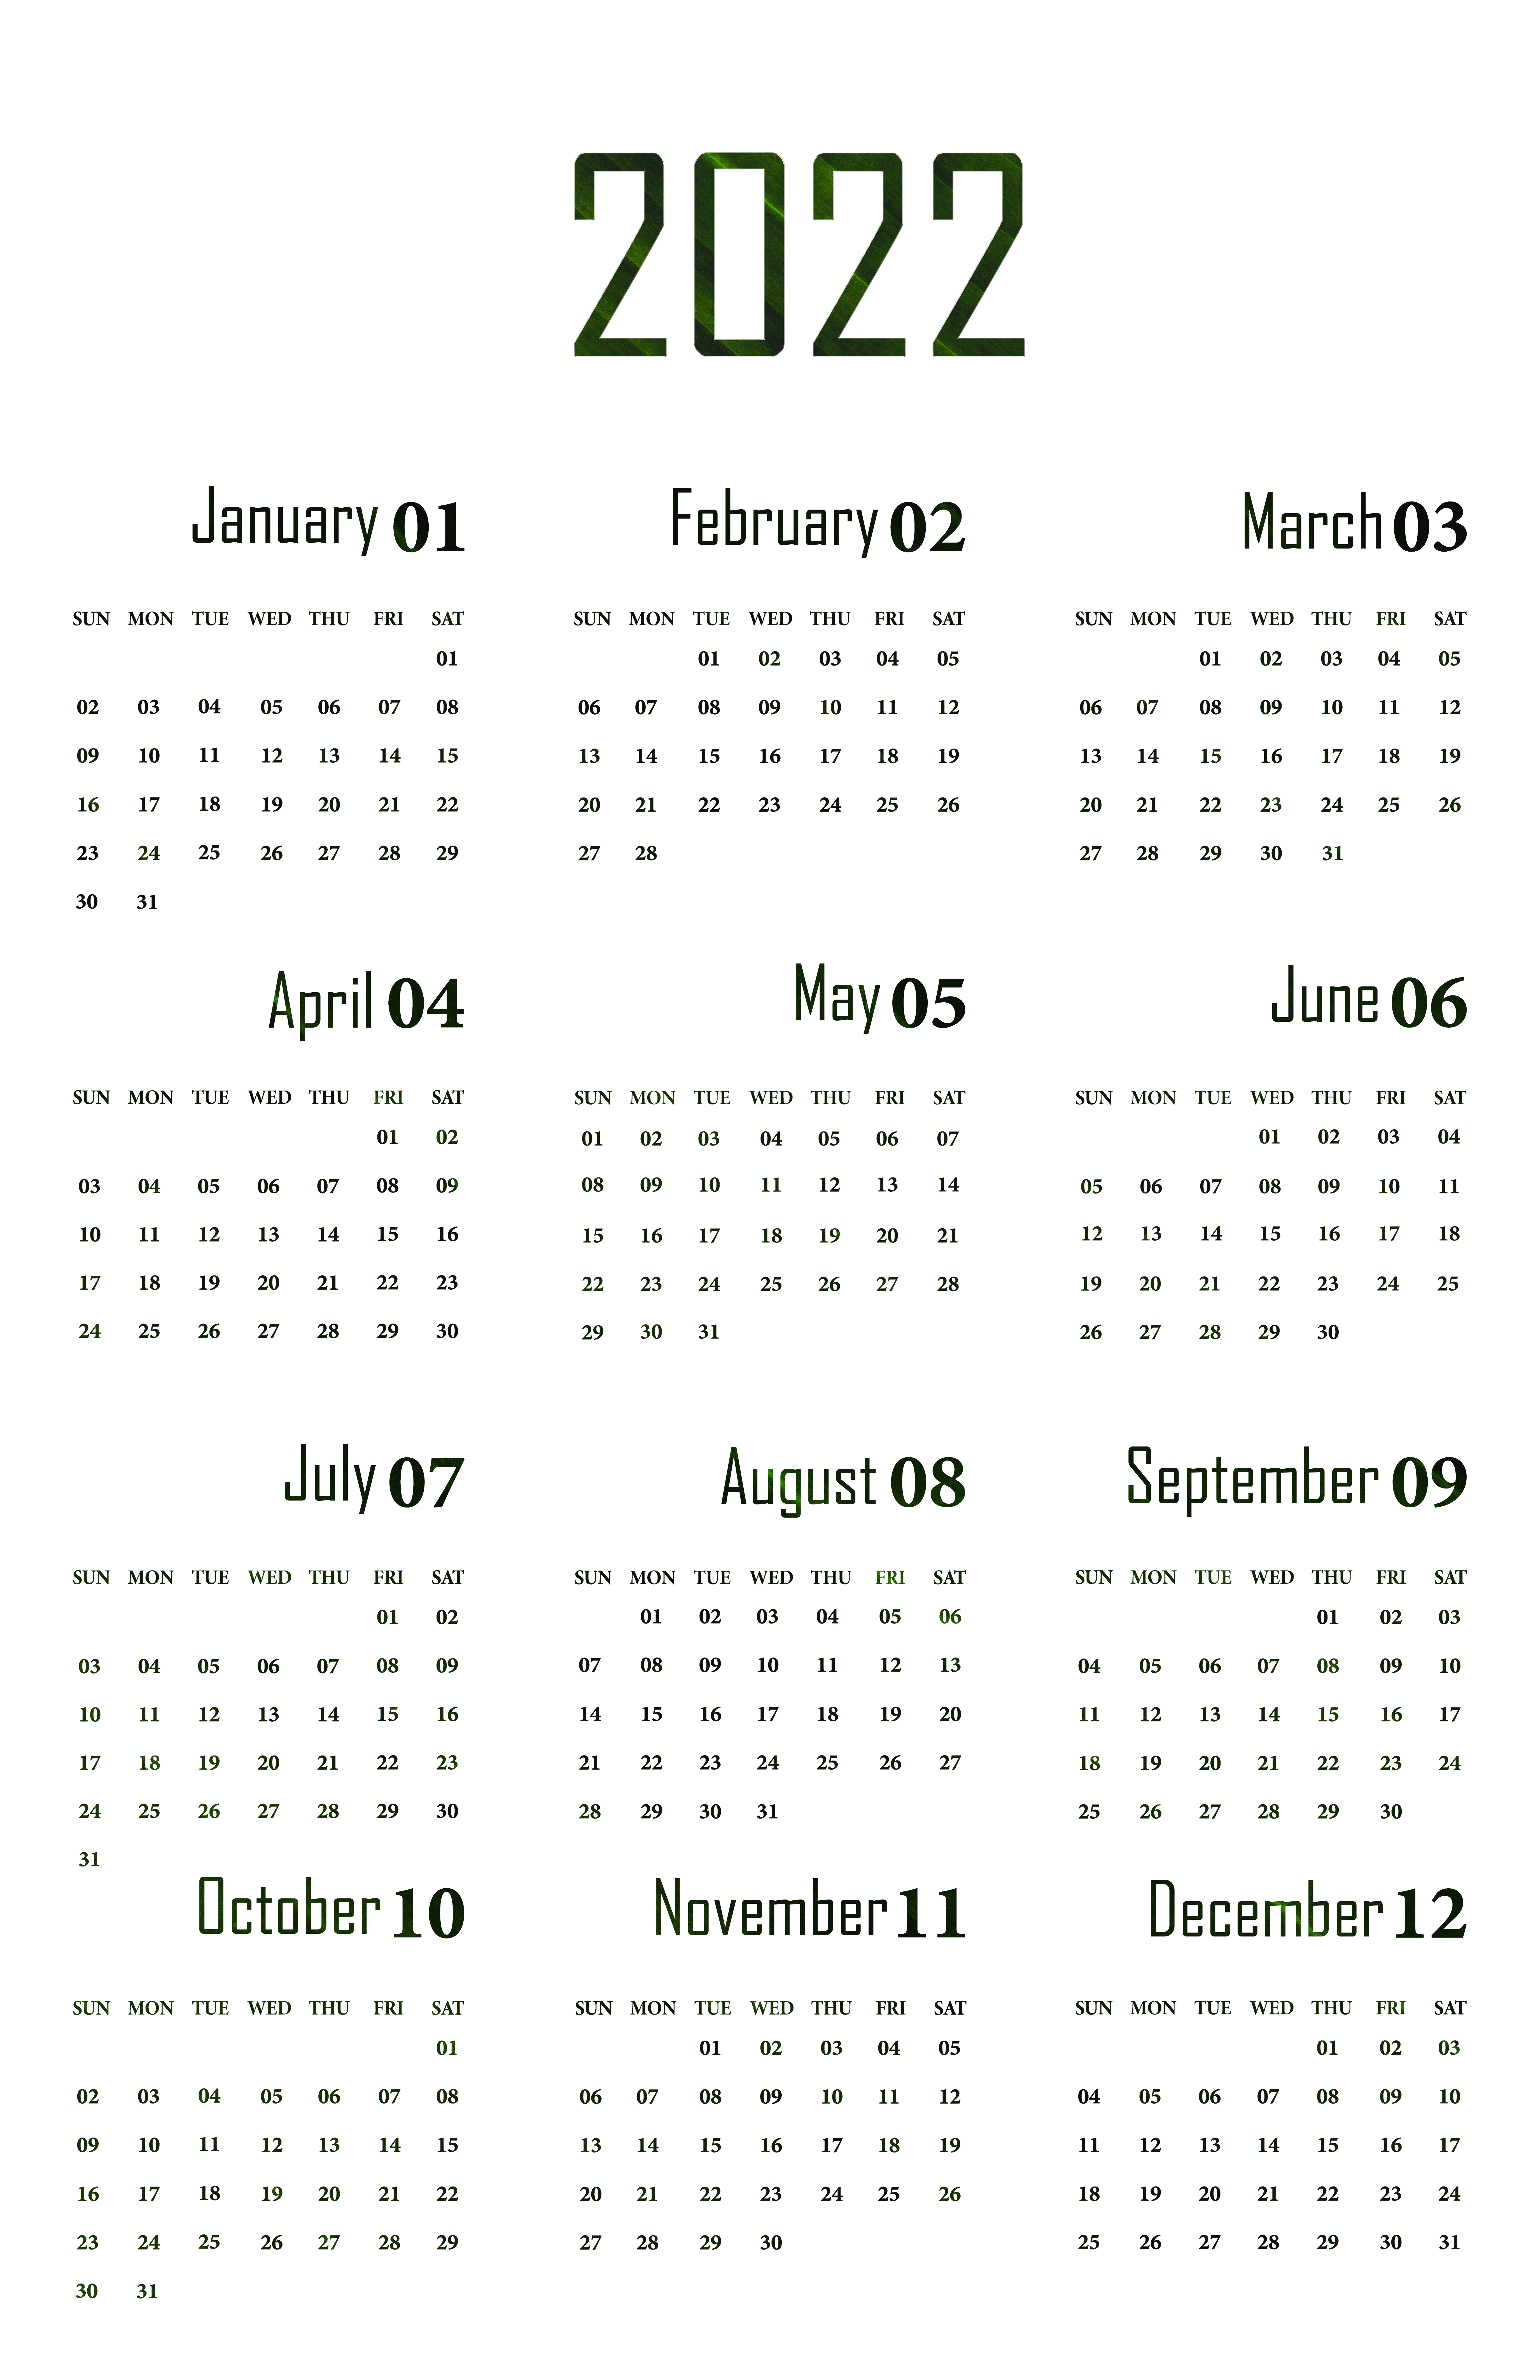 Calendario 2022 imagen PNG Transparente